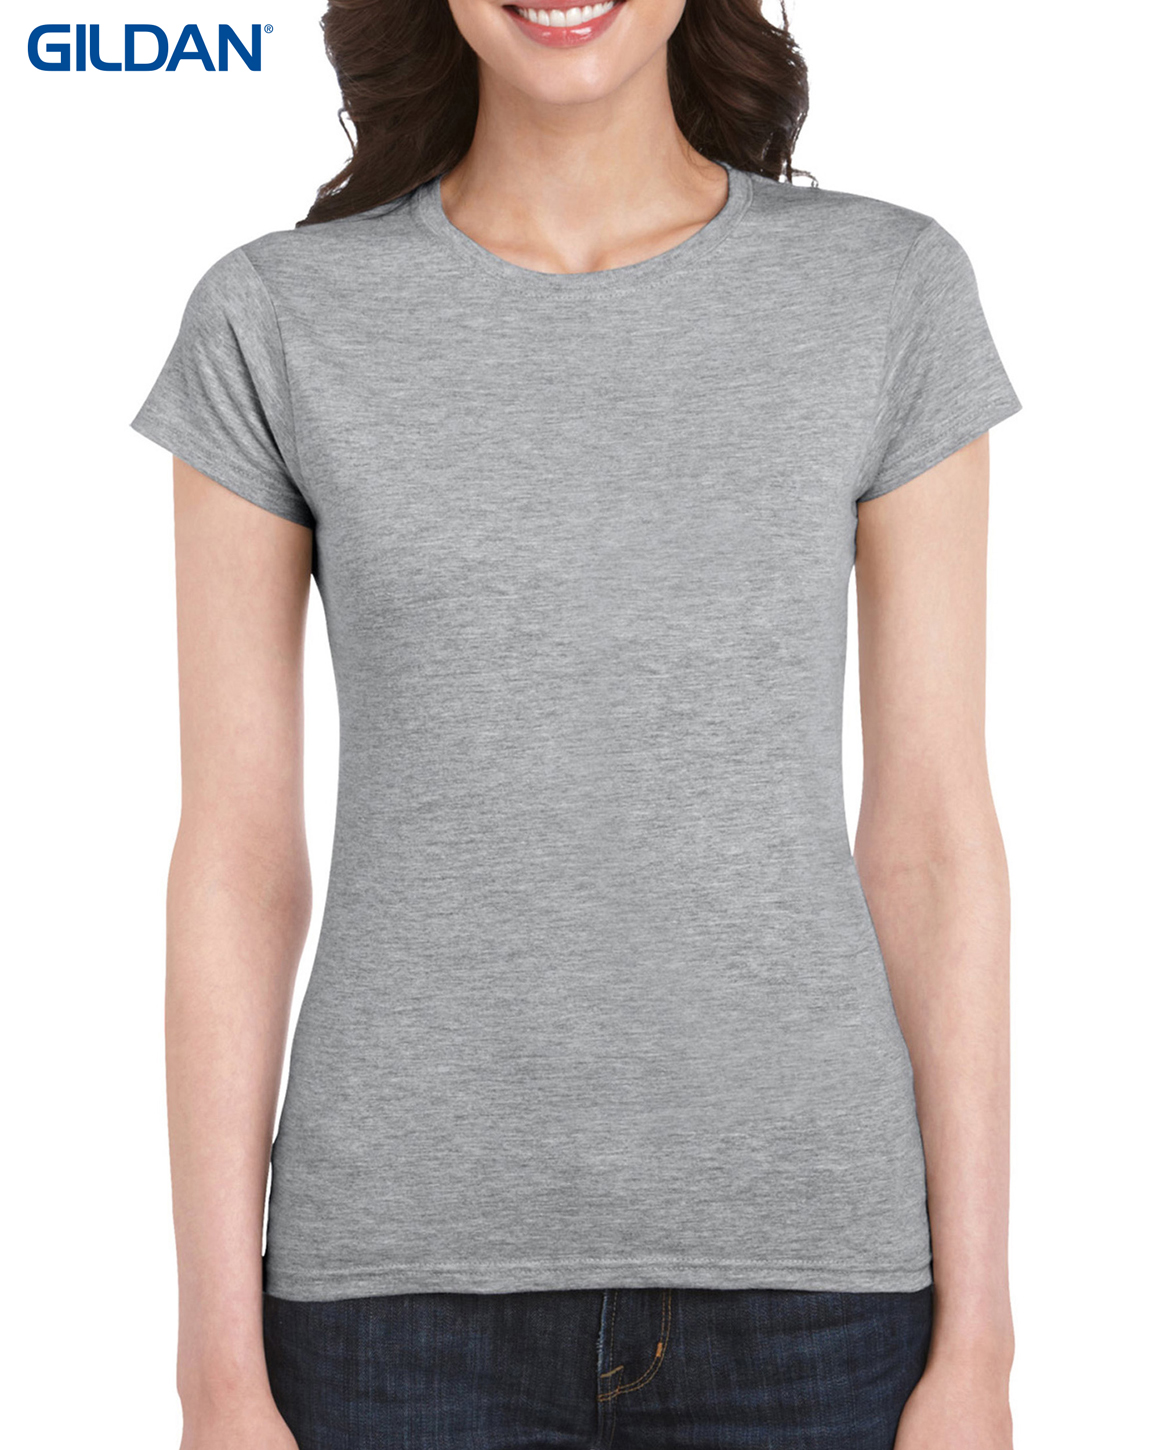 T Shirts : GILDAN WOMENS LIGHTWEIGHT 150GM 100% COTTON CN T-SHIRT G6400L